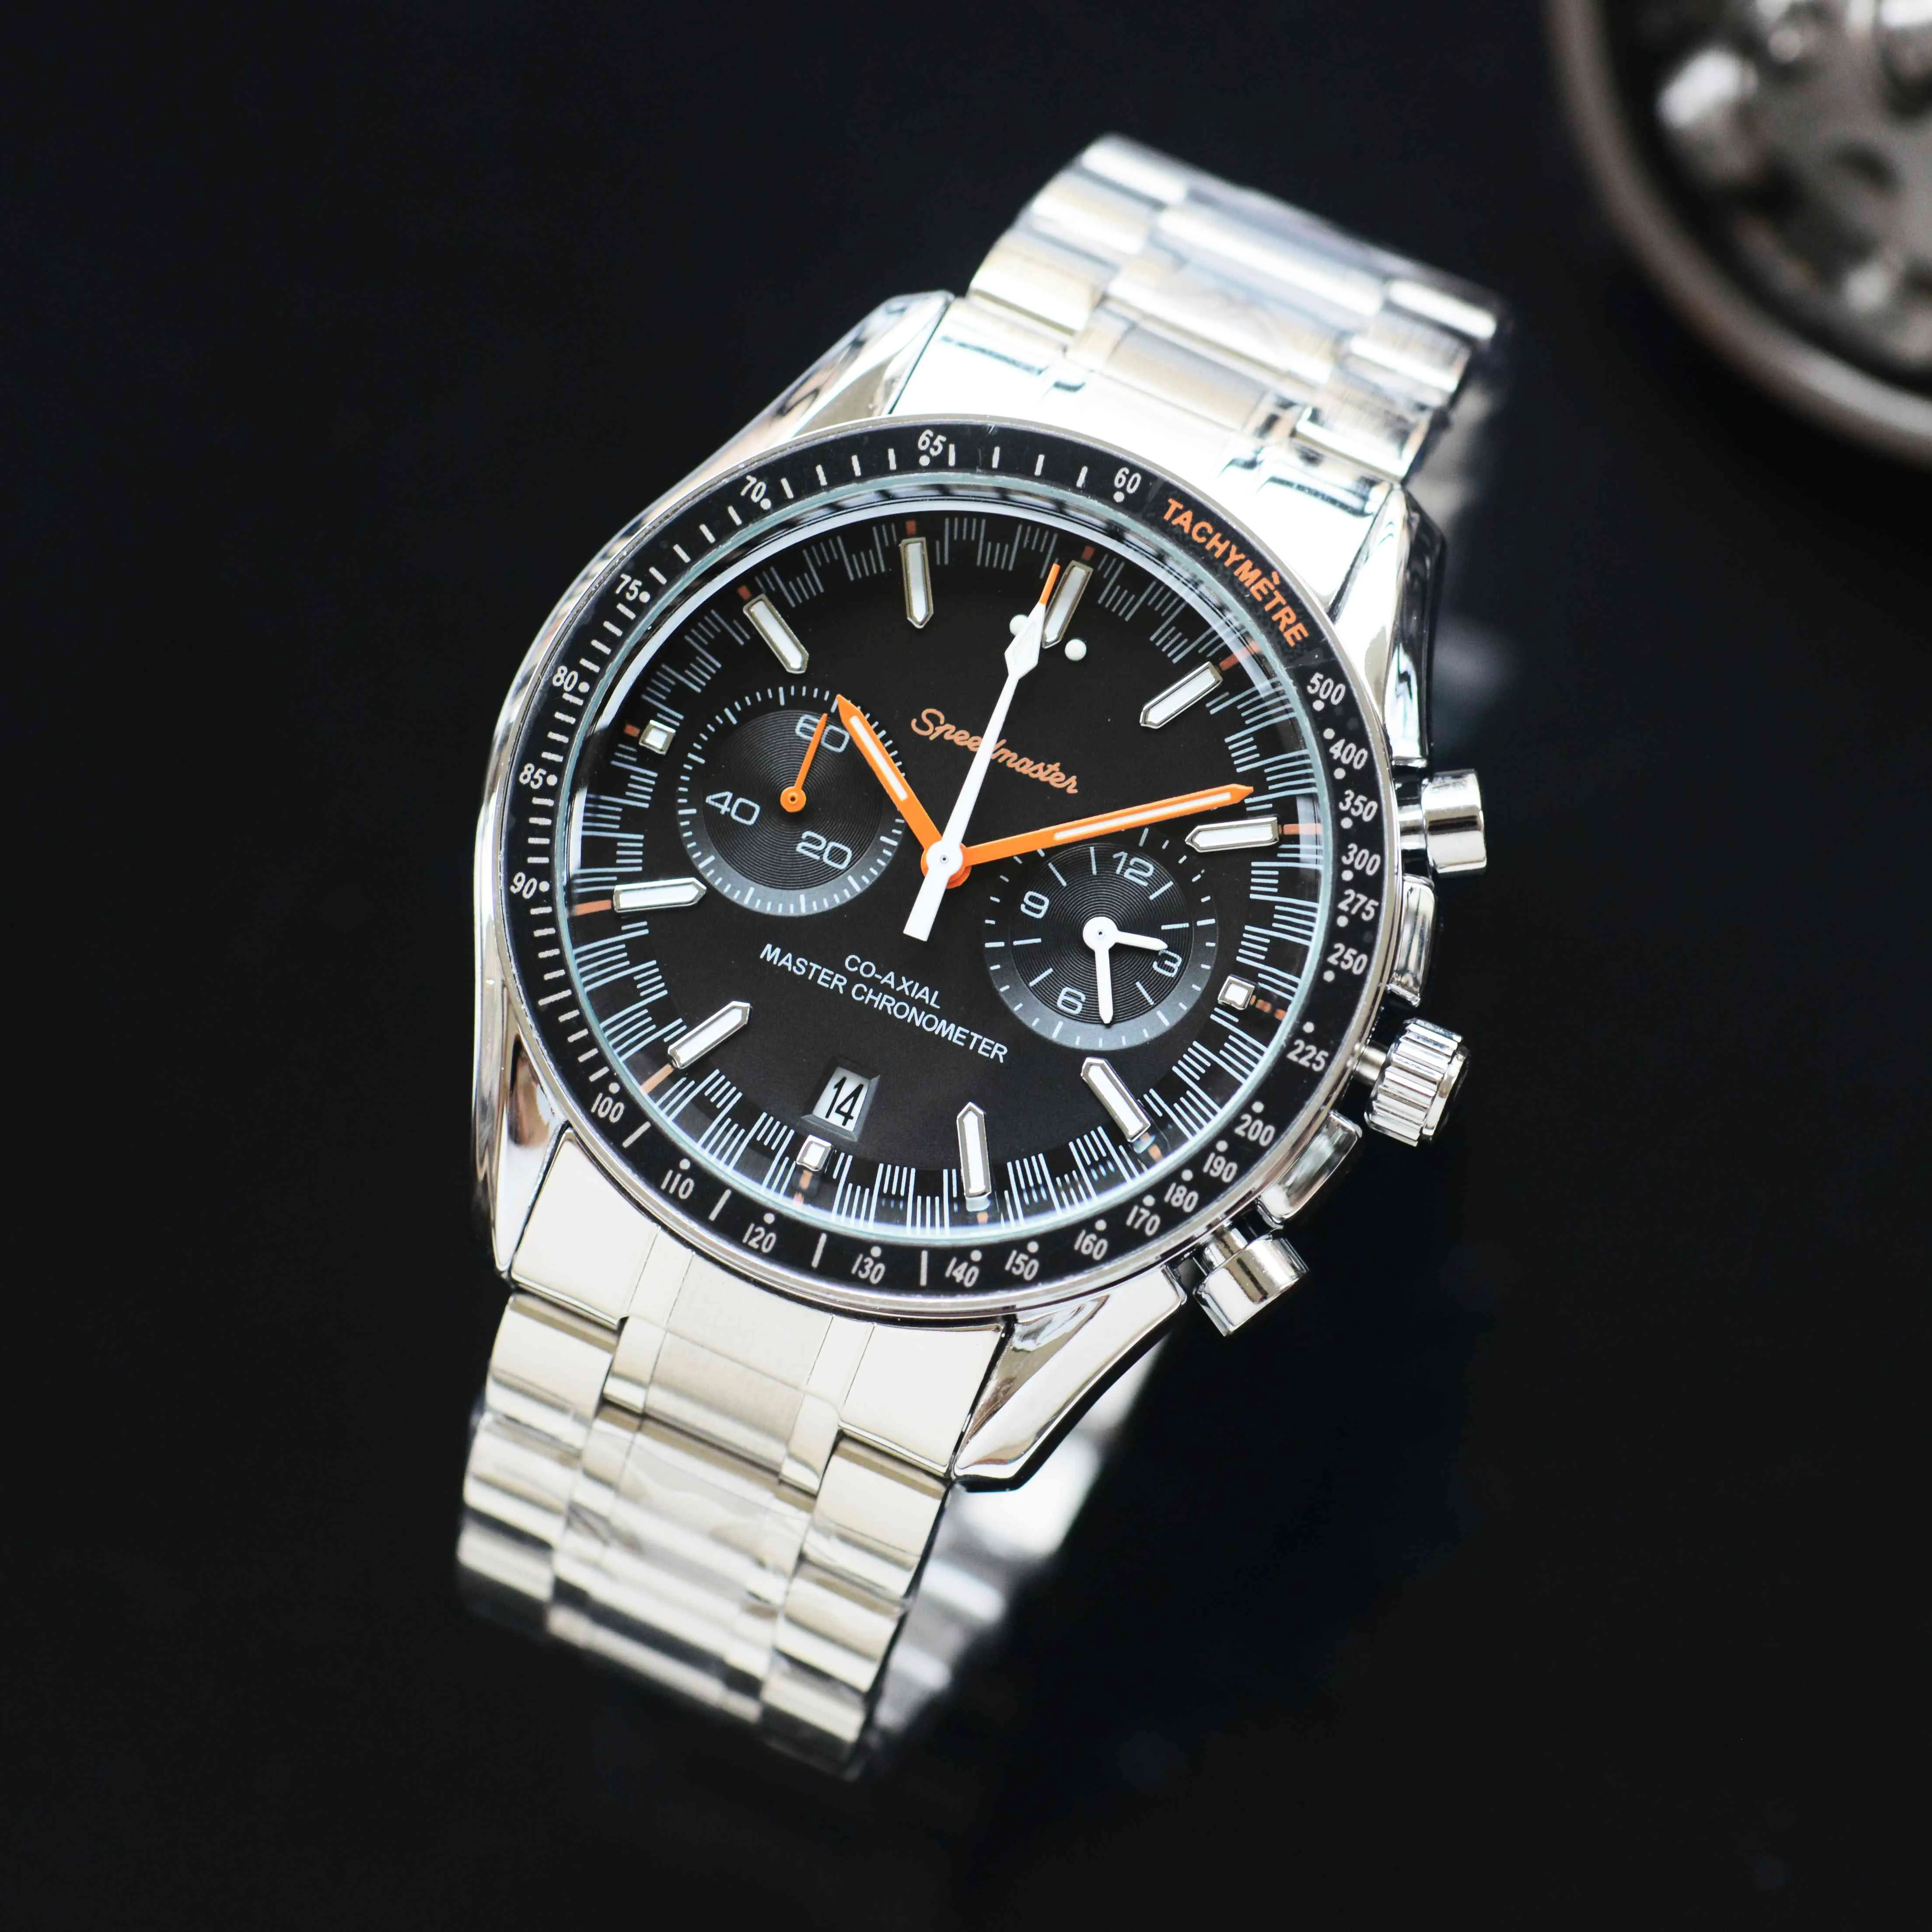 Новые роскошные мужские спортивные часы OMG, дизайнерские брендовые стальные ремни и ремни, часы с классическим циферблатом, кварцевые наручные часы, мужская мода